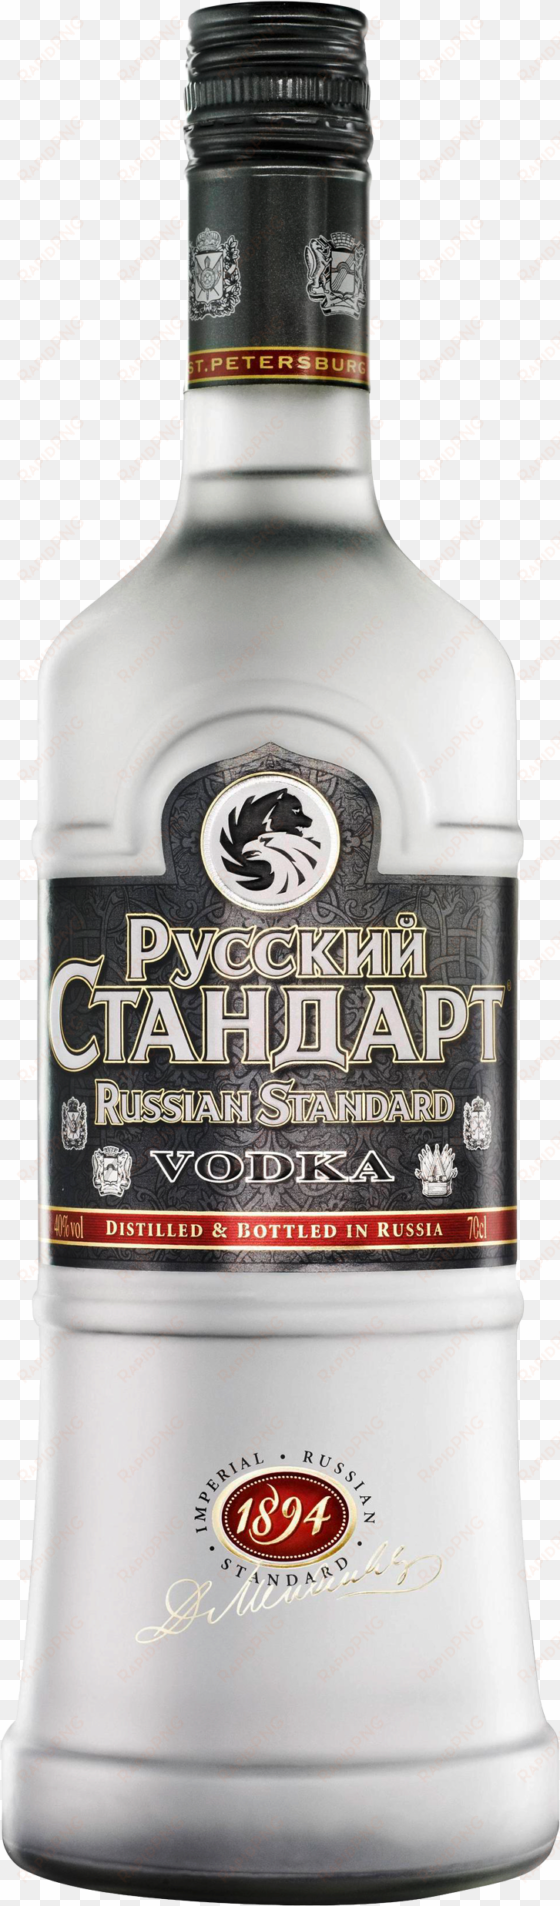 vodka bottle png image - russian standard original 1 litre